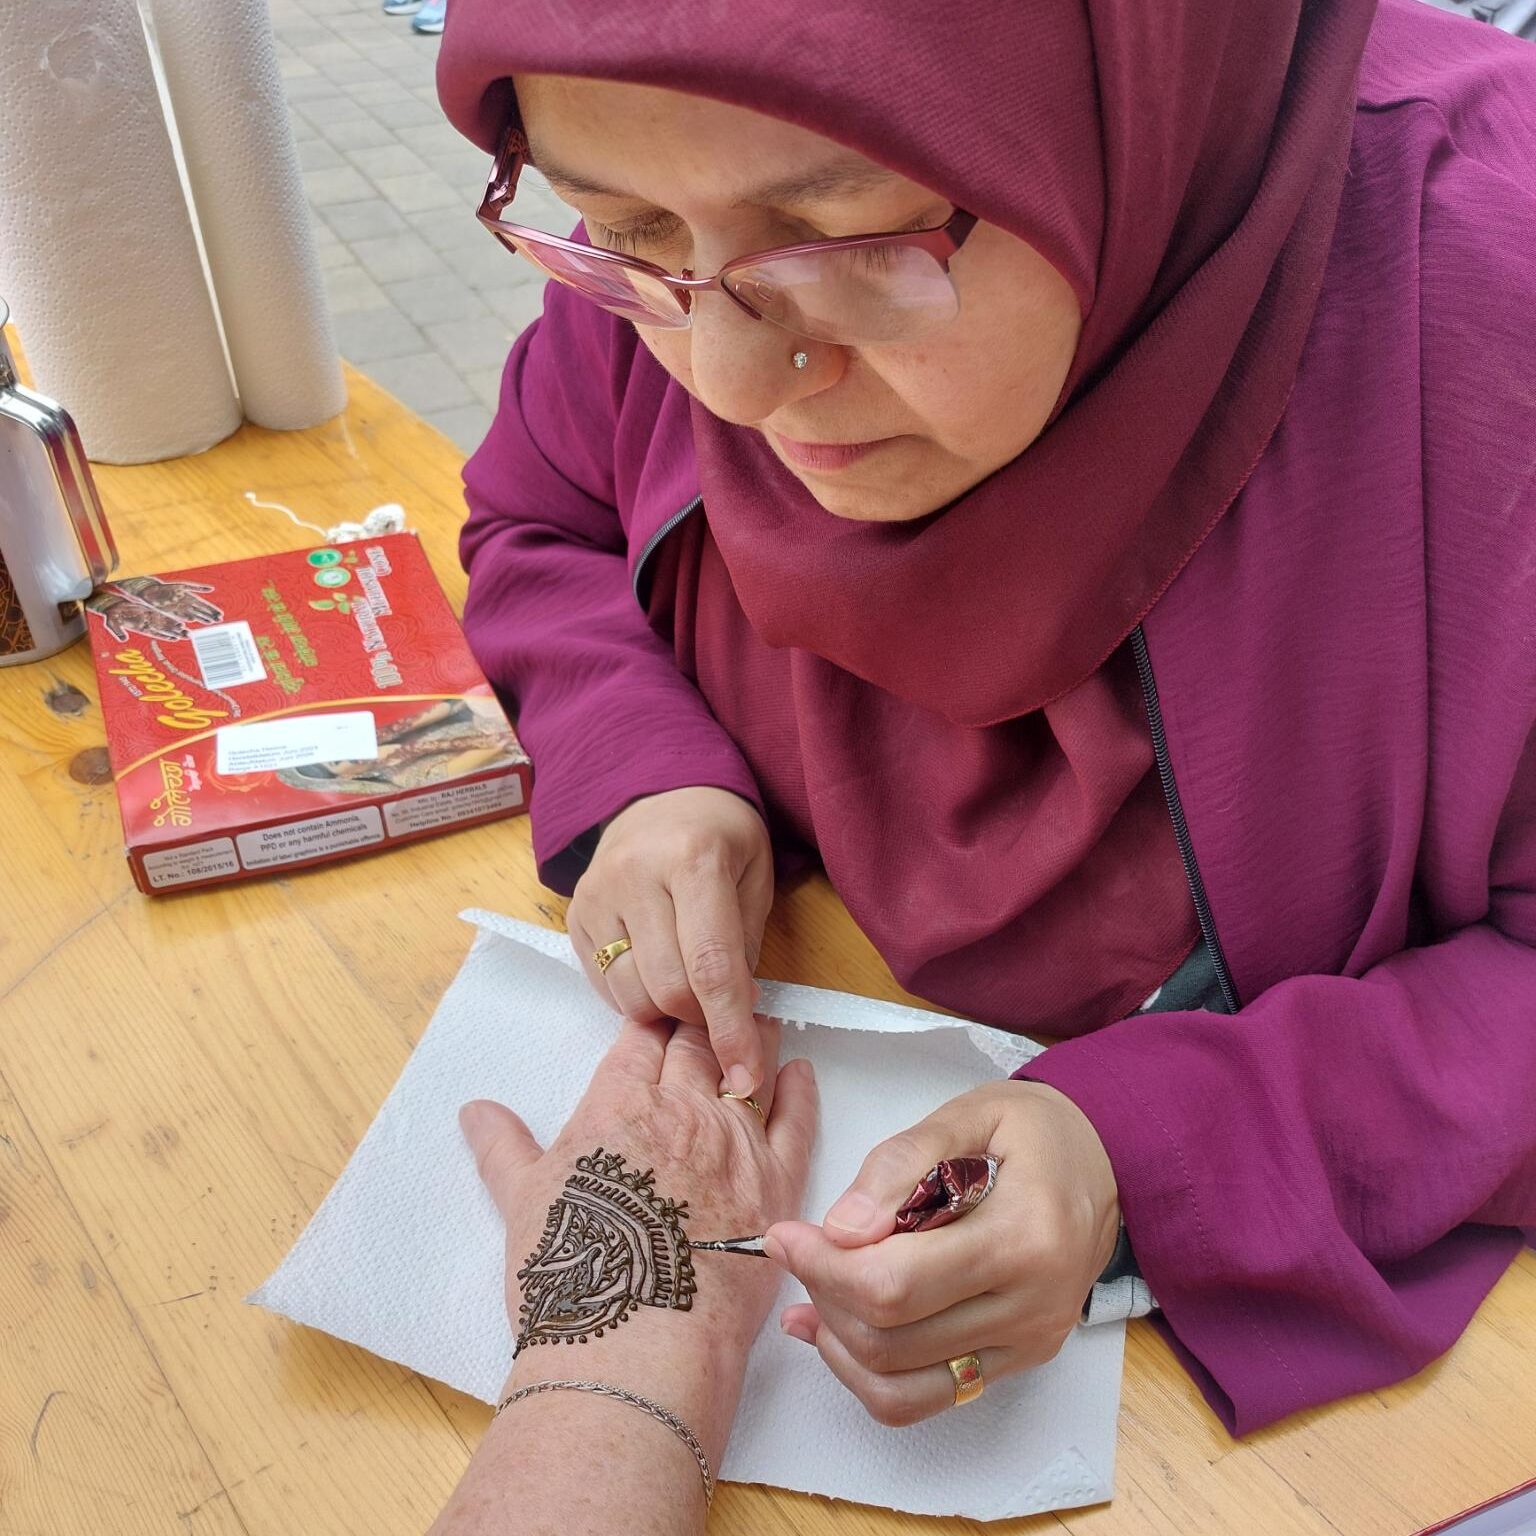 Konzentriert arbeitet eine Frau an einem Henna, dass sie gerade einer anderen Person auf die linke Hand aufträgt. Das Henna-Muster ist sehr detaillreich.